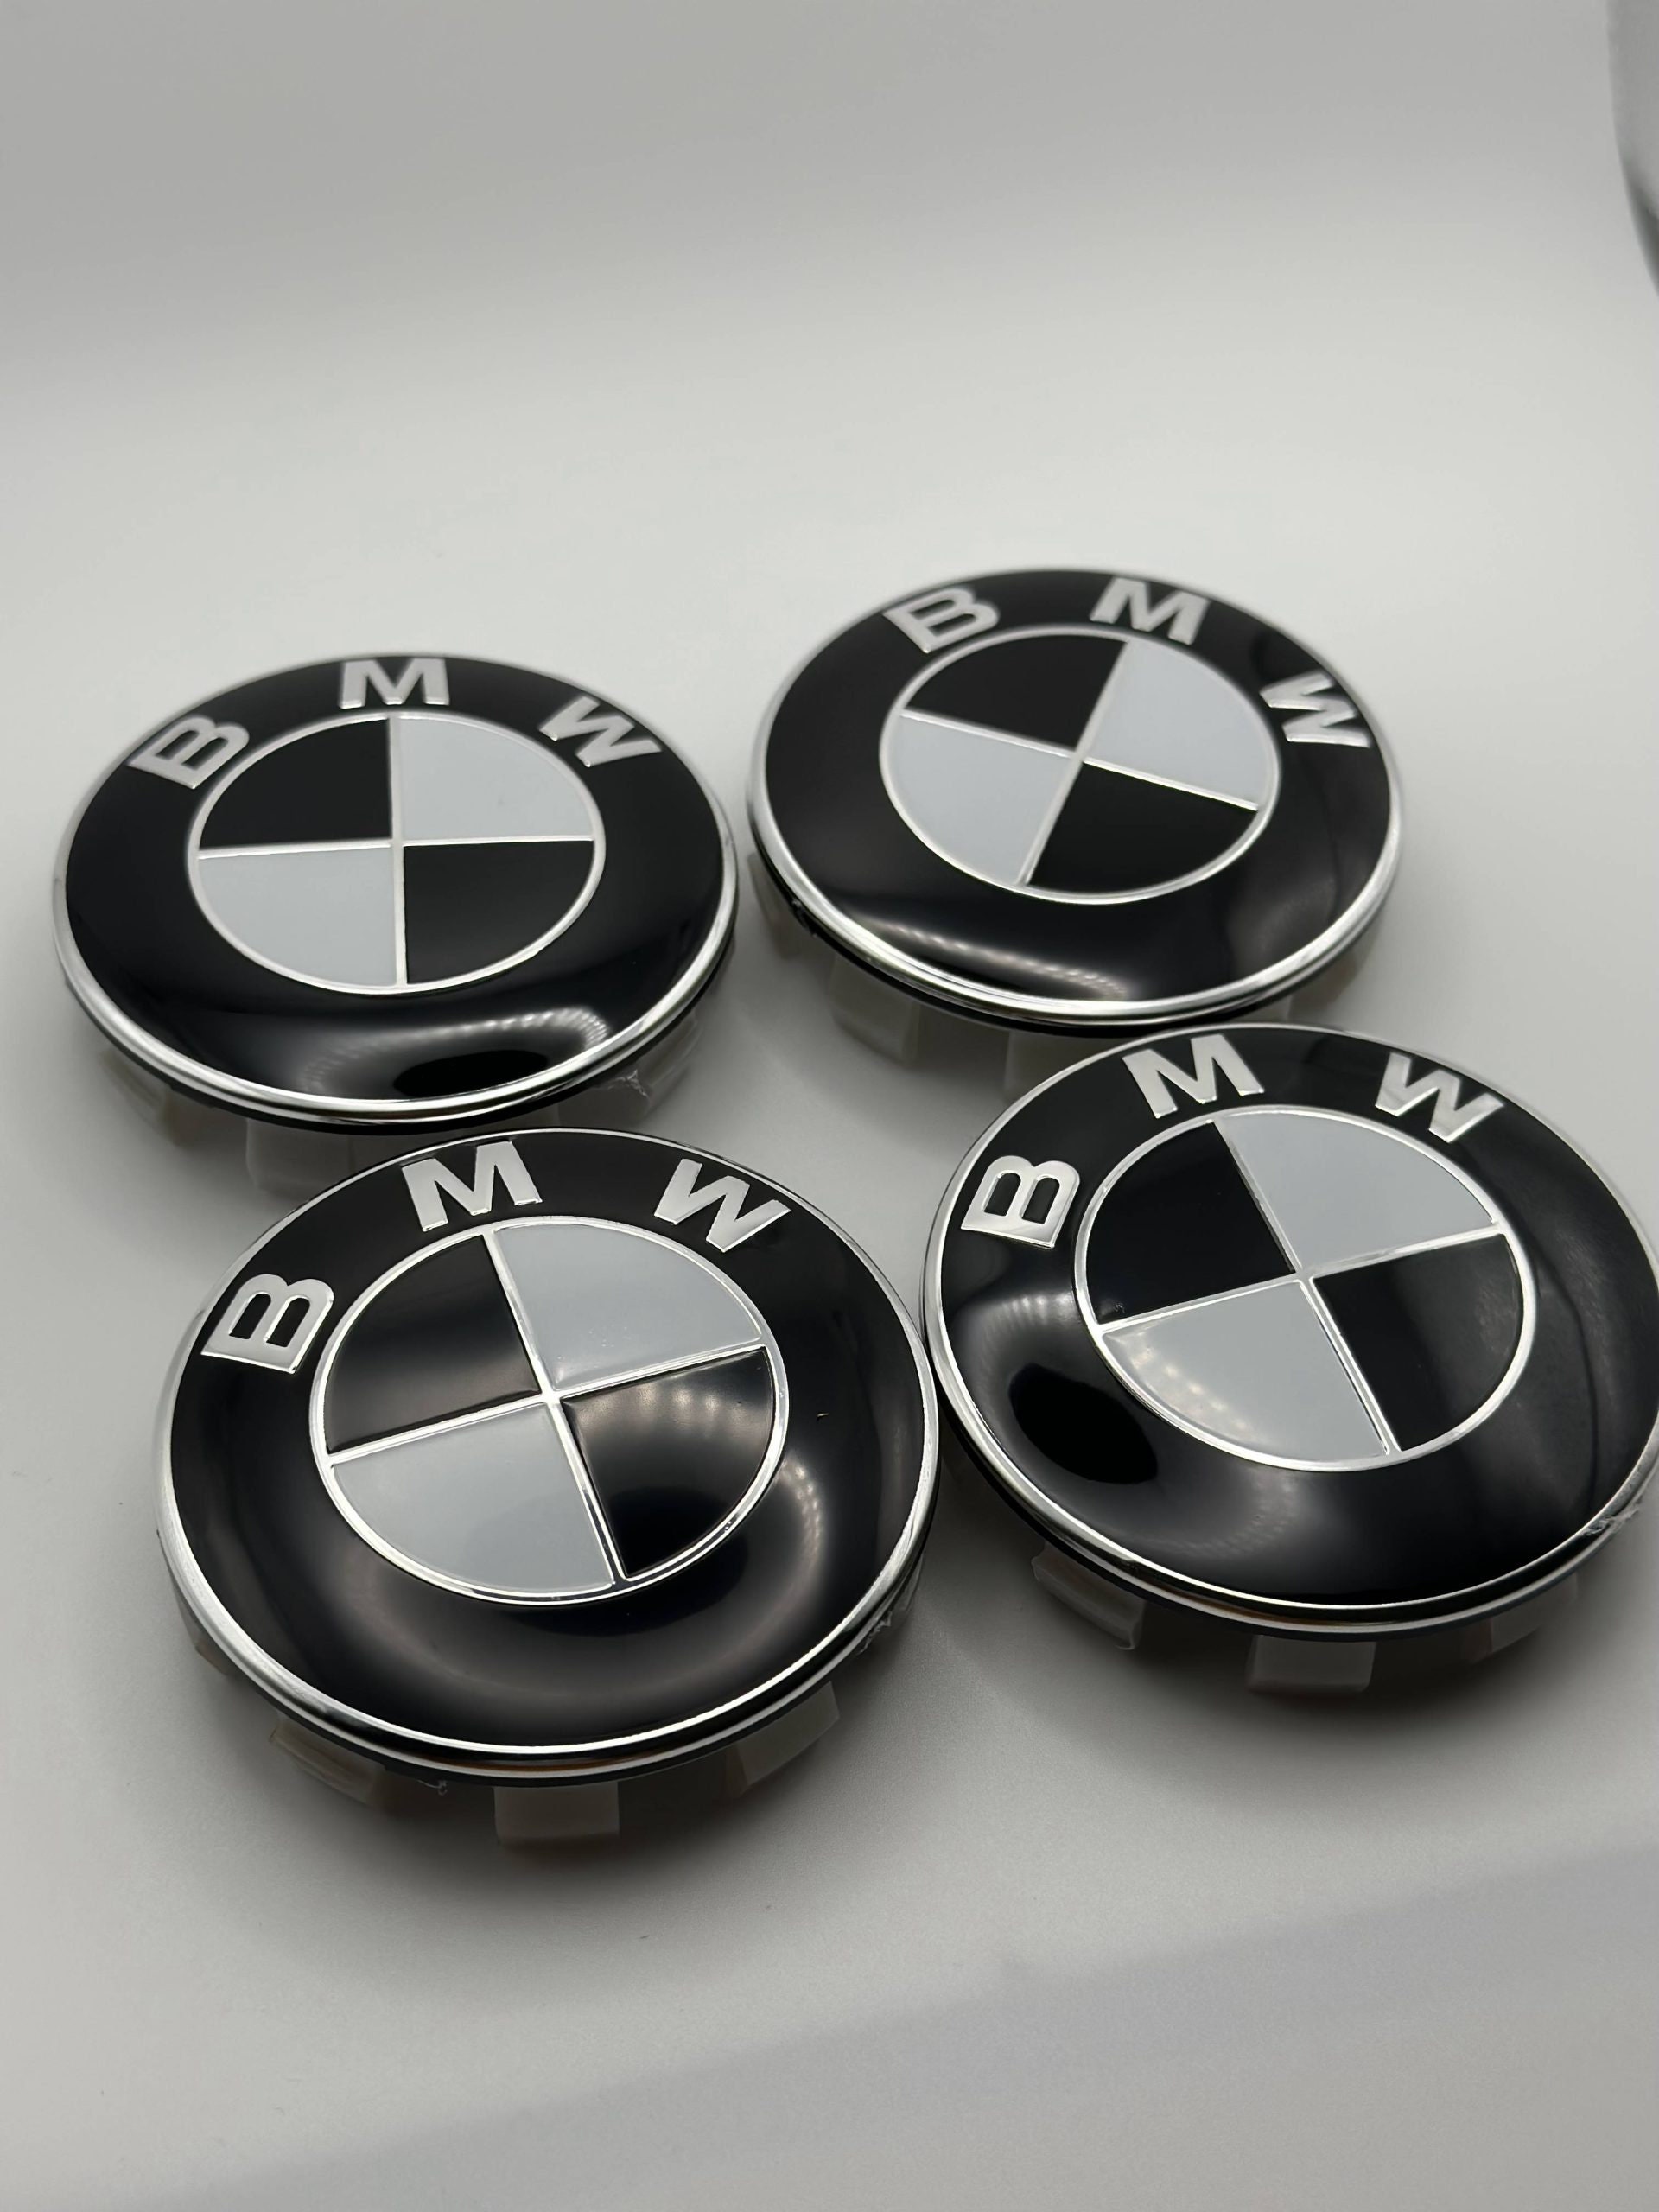 Emblema BMW 60 MM Blanco/Negro Performance (para centro de rueda) -  E-DZSHOP AUTOPARTS